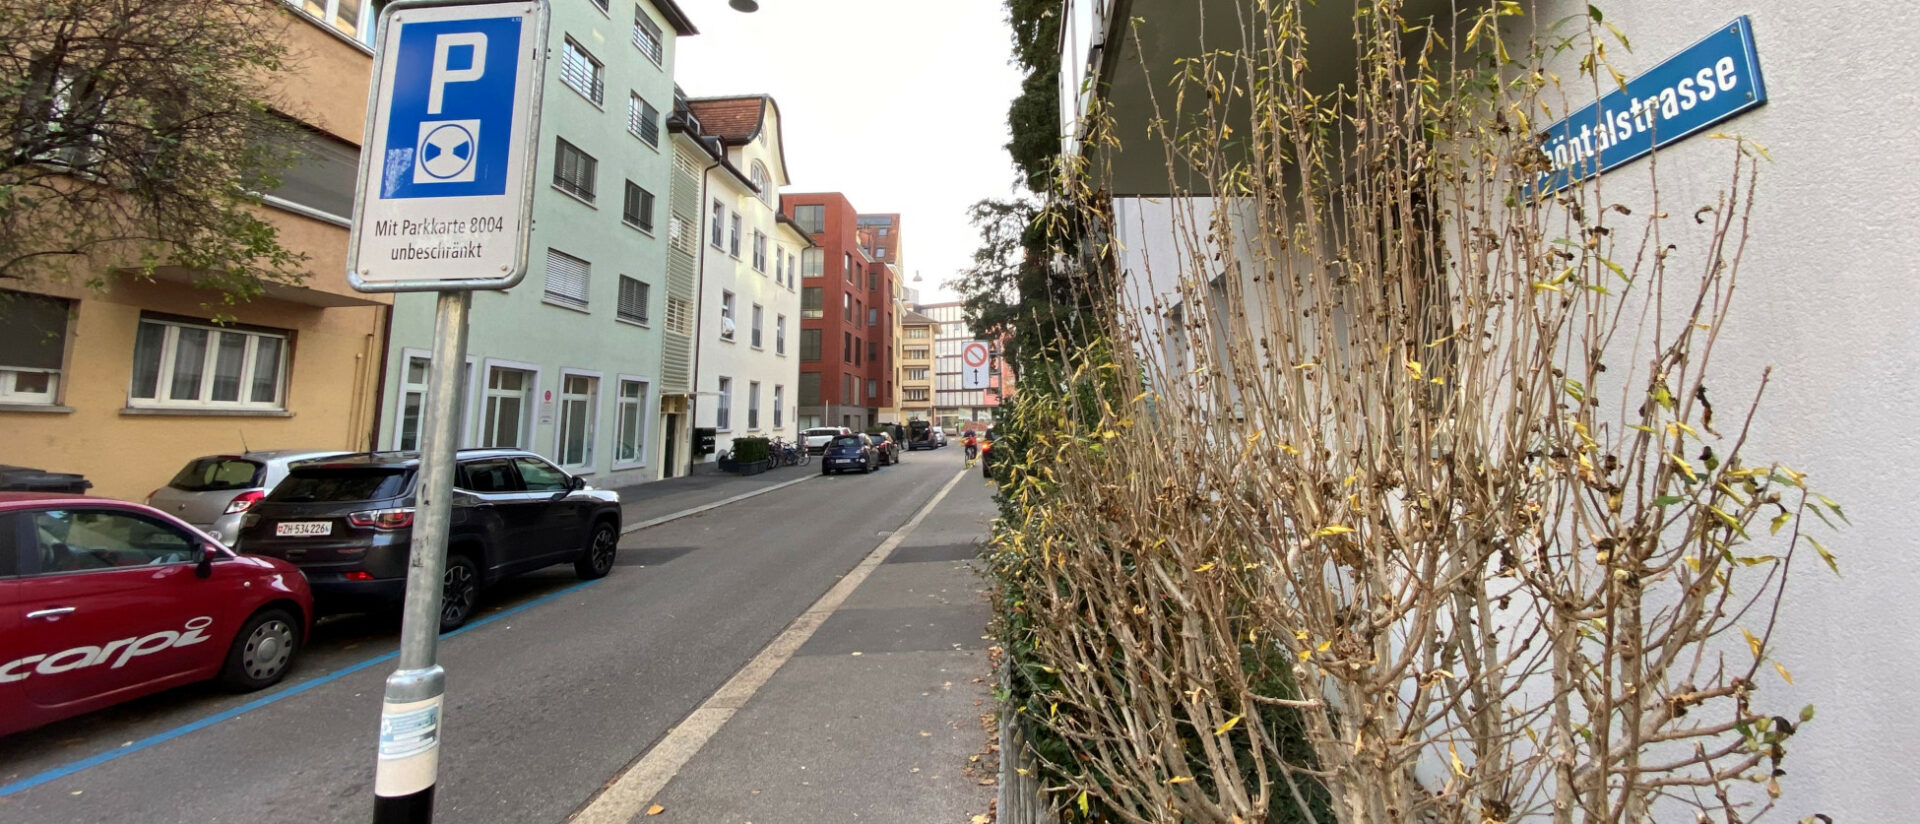 Hier sollen Stolpersteine verlegt werden: in der Schöntalstrasse 22 in Zürich.